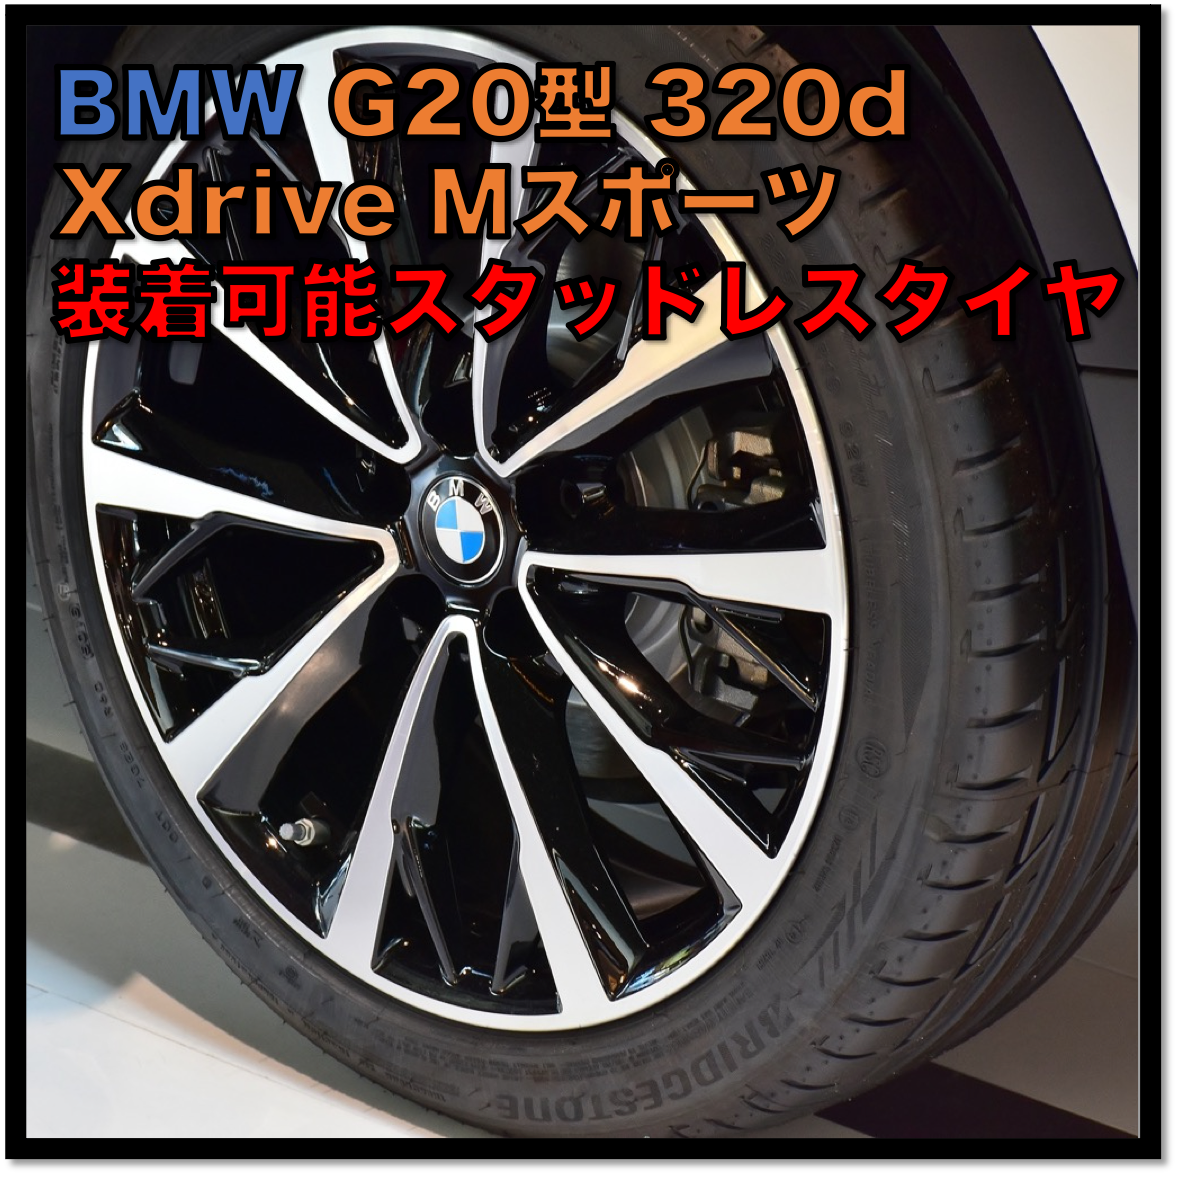 BMW G20型 320d Xdrive Mスポーツ 装着可能スタッドレスタイヤ | くら 